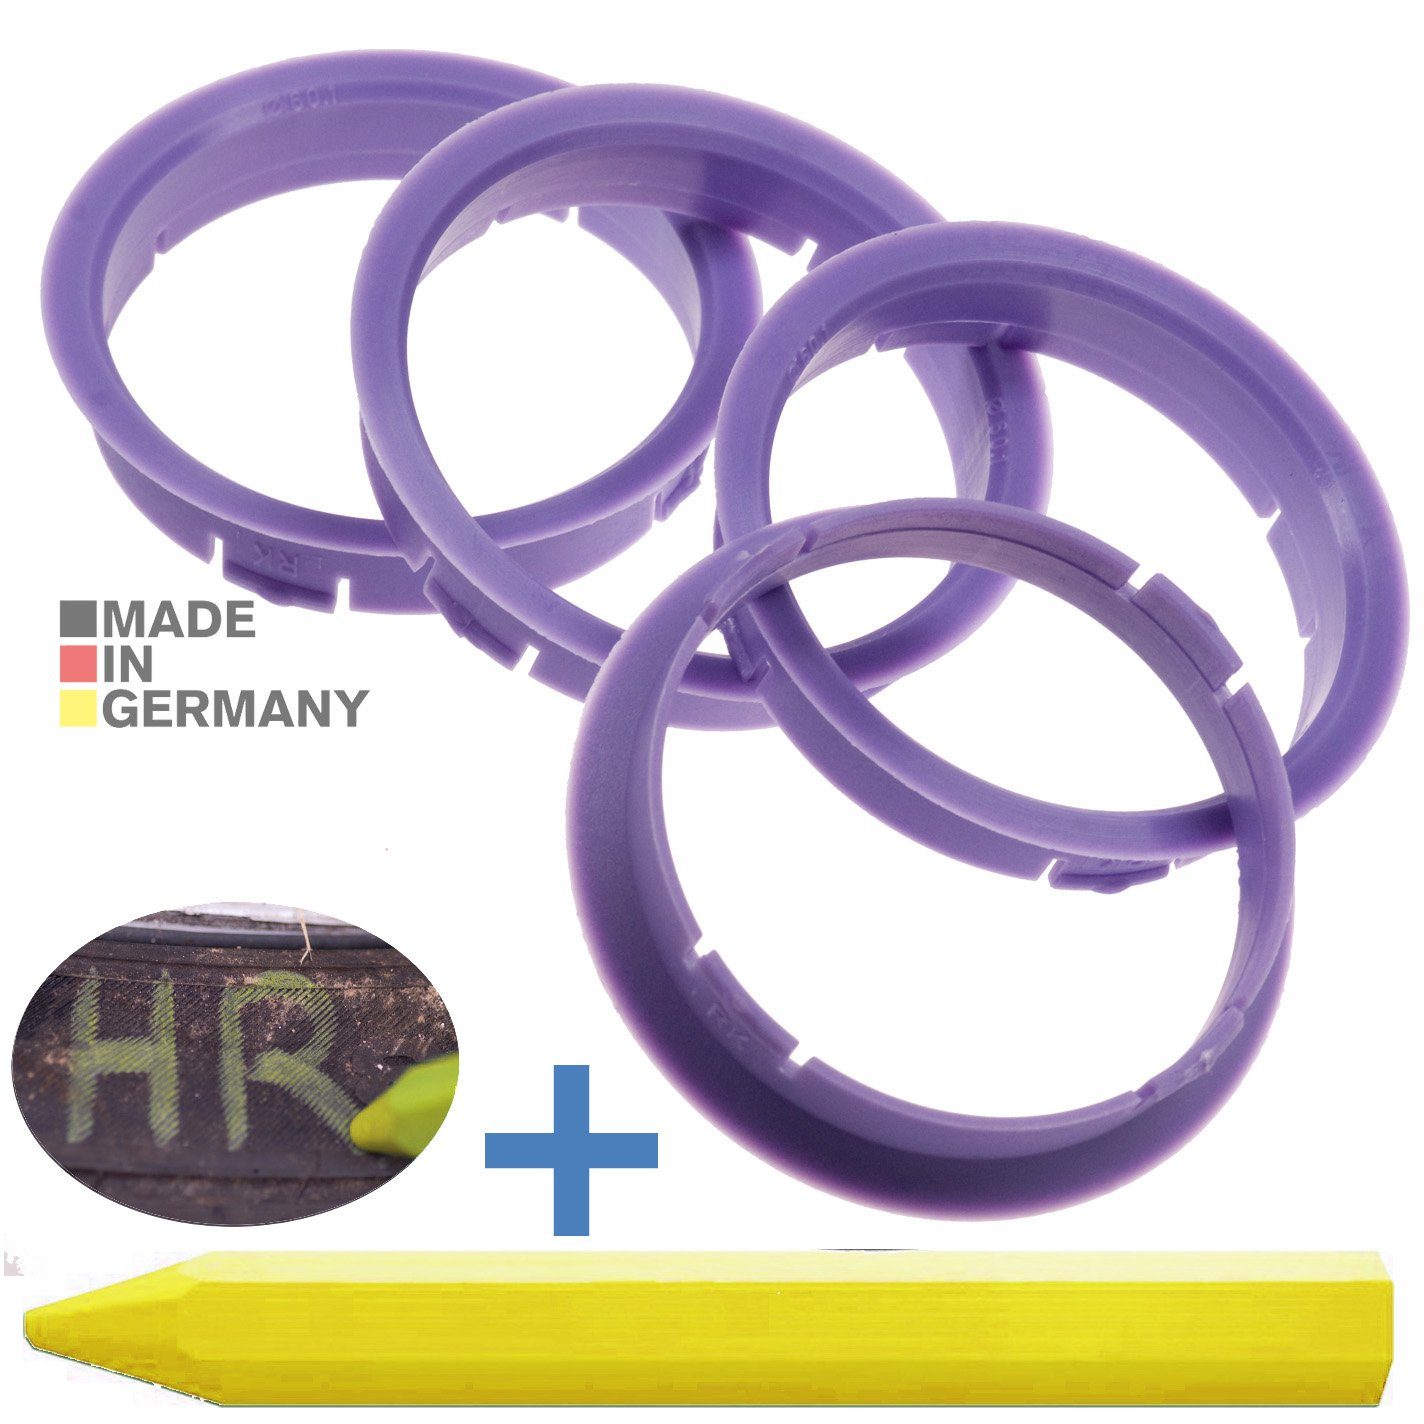 RKC Reifenstift 4X Zentrierringe Lila Felgen Ringe + 1x Reifen Kreide Fett Stift, Maße: 63,3 x 60,1 mm